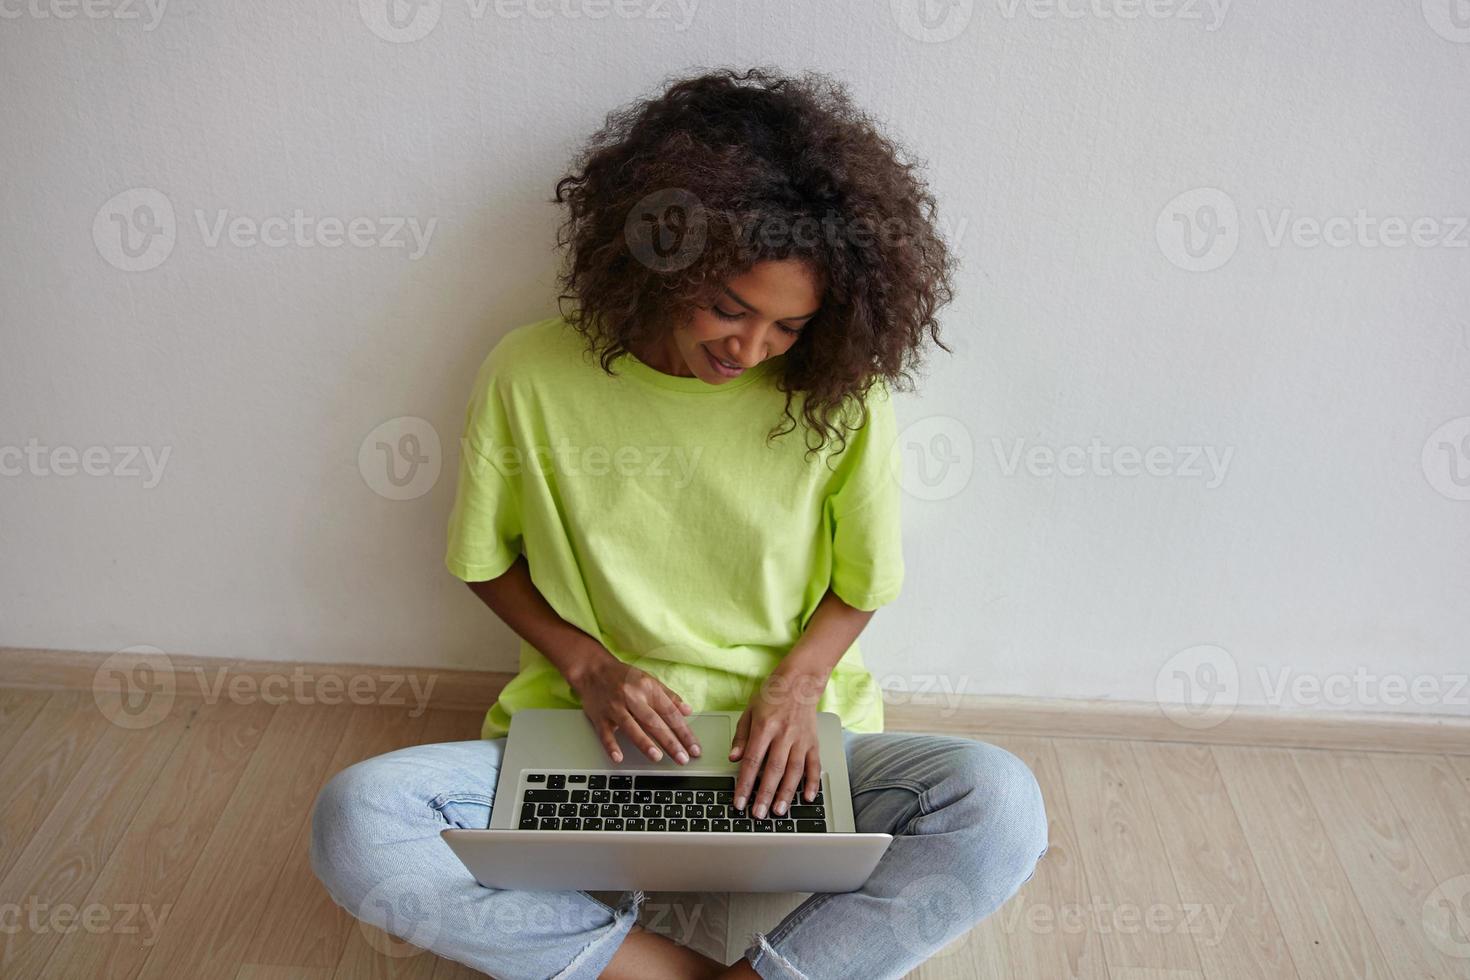 giovane bella donna freelance con capelli ricci castani seduta sul pavimento con le gambe incrociate, tenendo il laptop sulle gambe e lavorando a casa in abiti casual foto